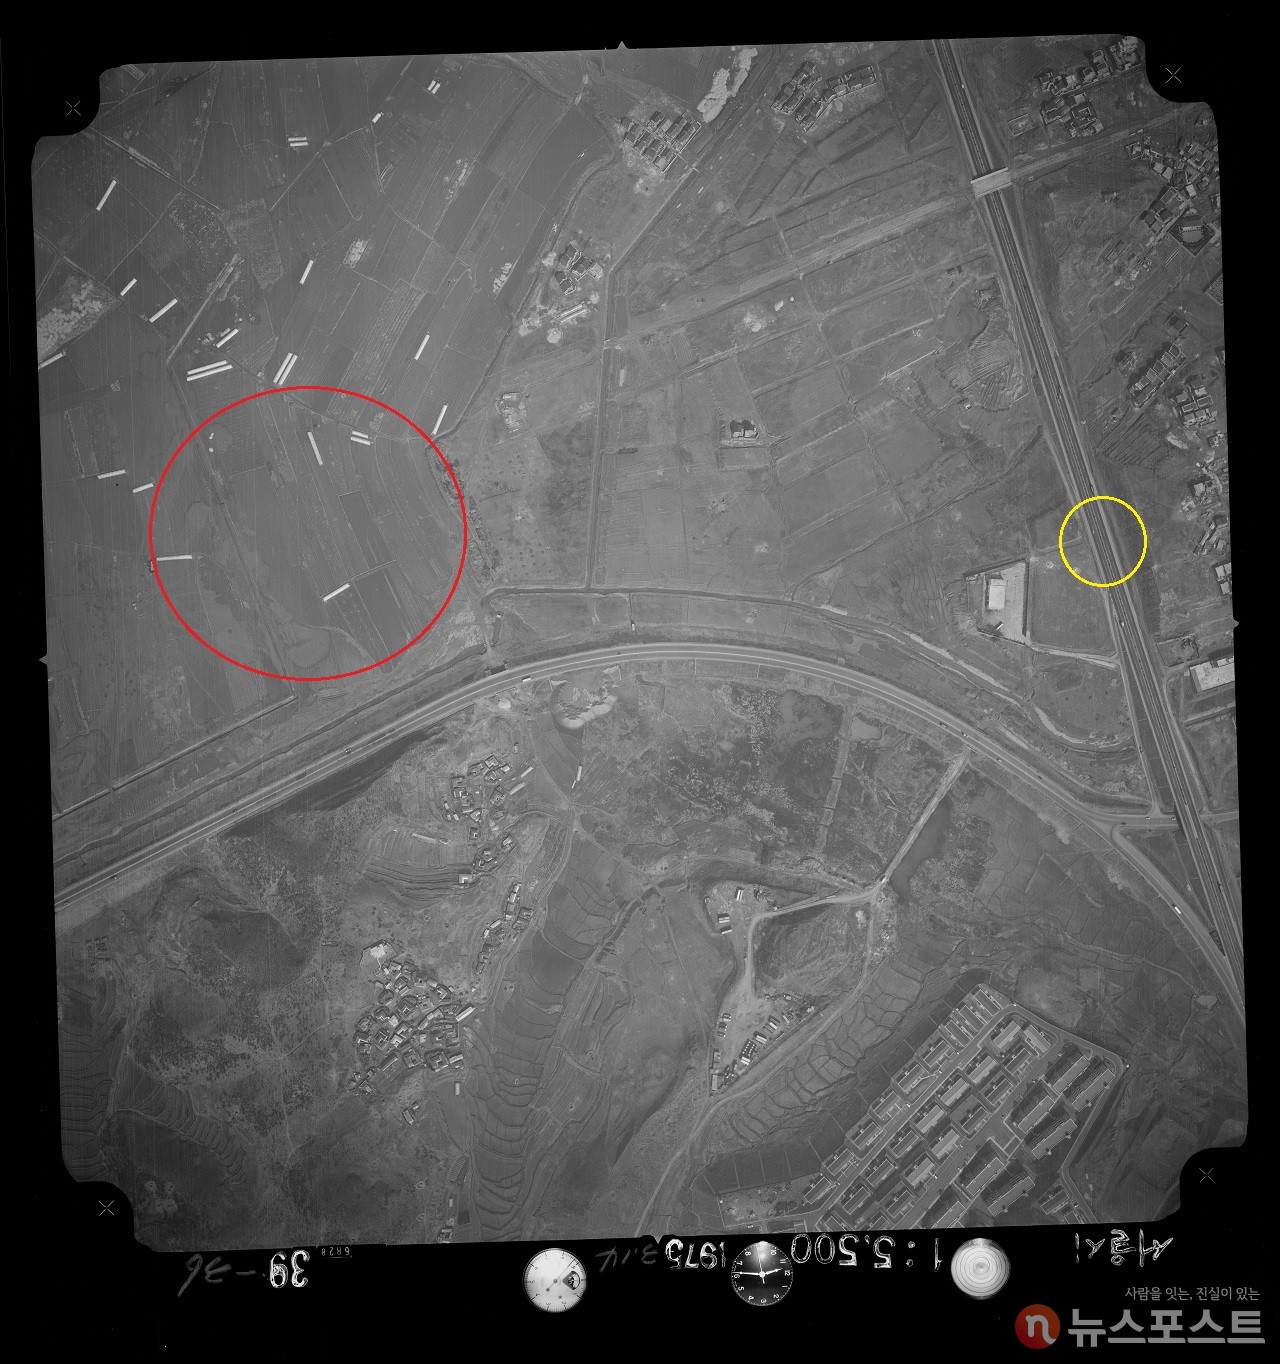 1975년 항공사진. 고속터미널이 들어서게 된 반포동 일대. 빨간 원이 터미널 자리. 노란 원은 경부고속도로. 사진 왼쪽 상단에 비닐하우스가 보이는 등 터미널 부지 주변은 농촌이었다. (사진: 국토지리정보원 제공)